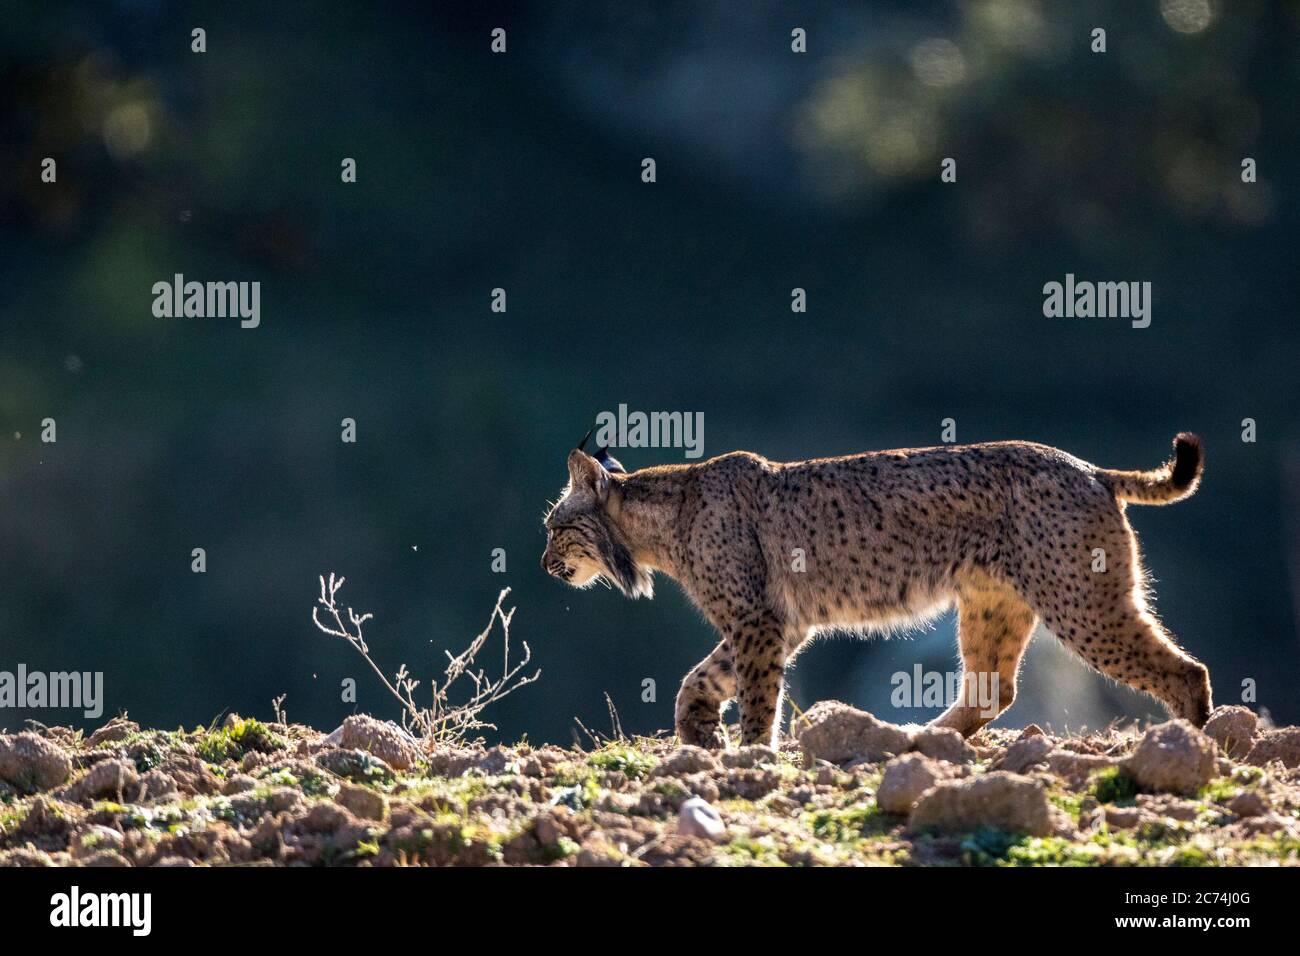 Lynx ibérique (Lynx pardinus), marche sur une colline avec contre-jour, Espagne Banque D'Images